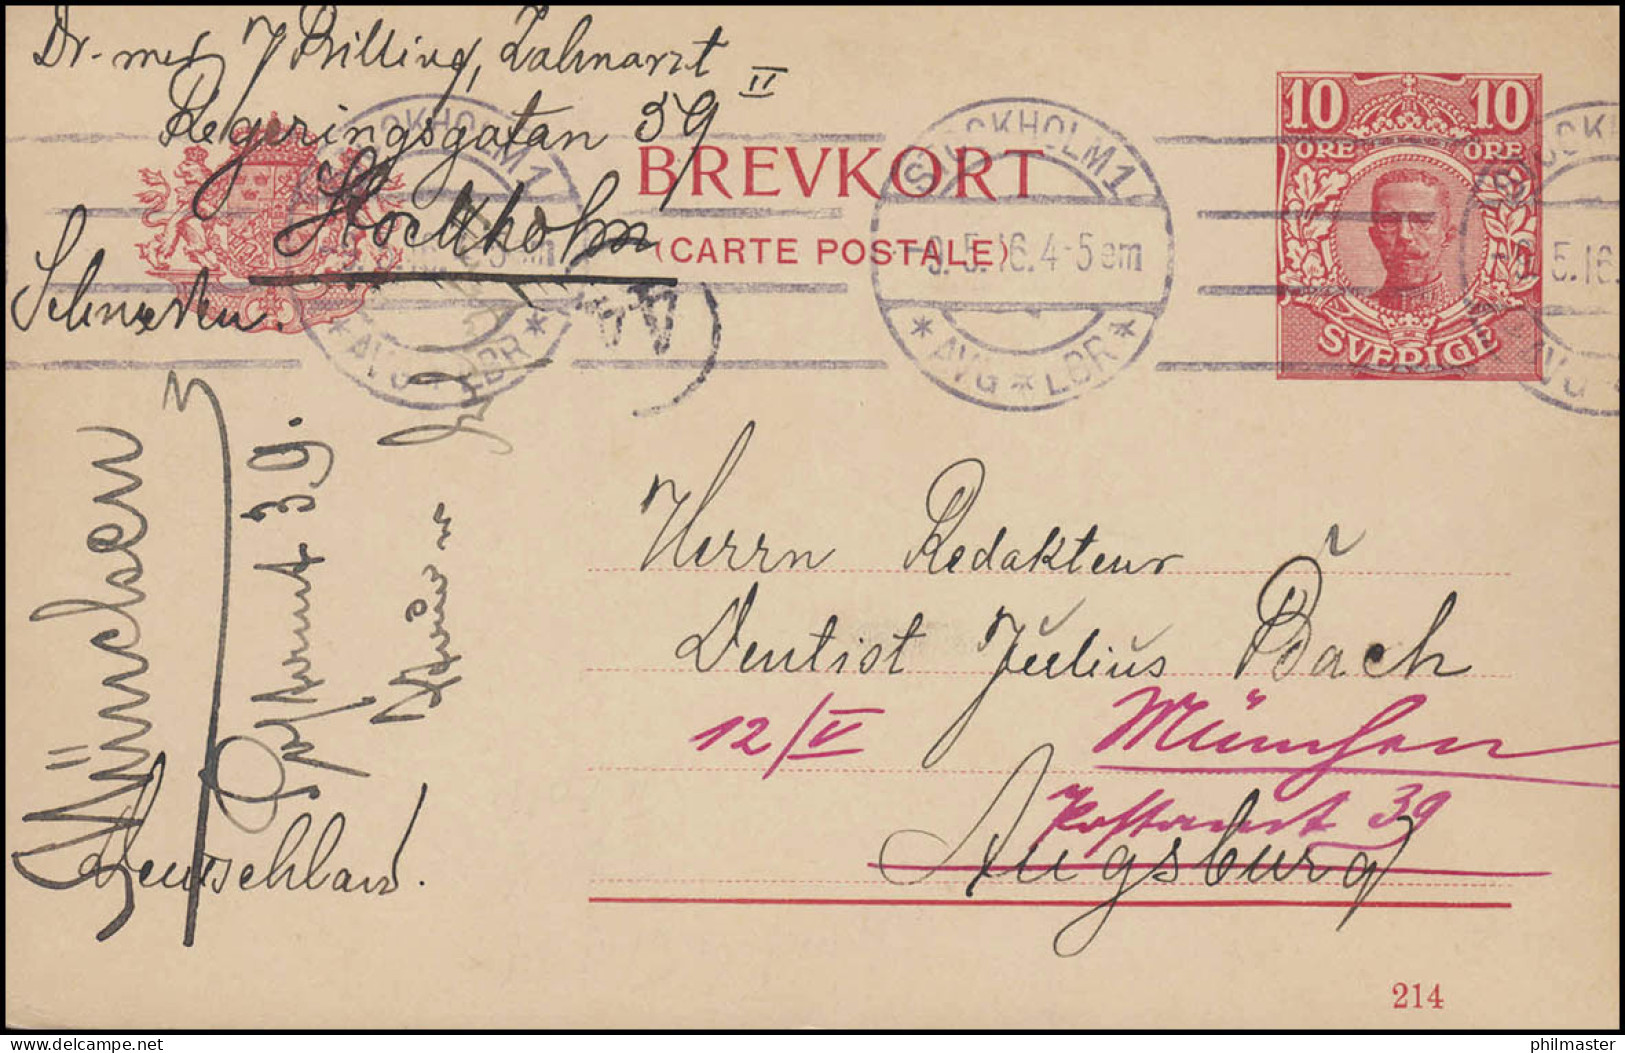 Postkarte P 30 BREFKORT König Gustav Mit DV 214, STOCKHOLM 9.5.16 Nach Augsburg - Postal Stationery